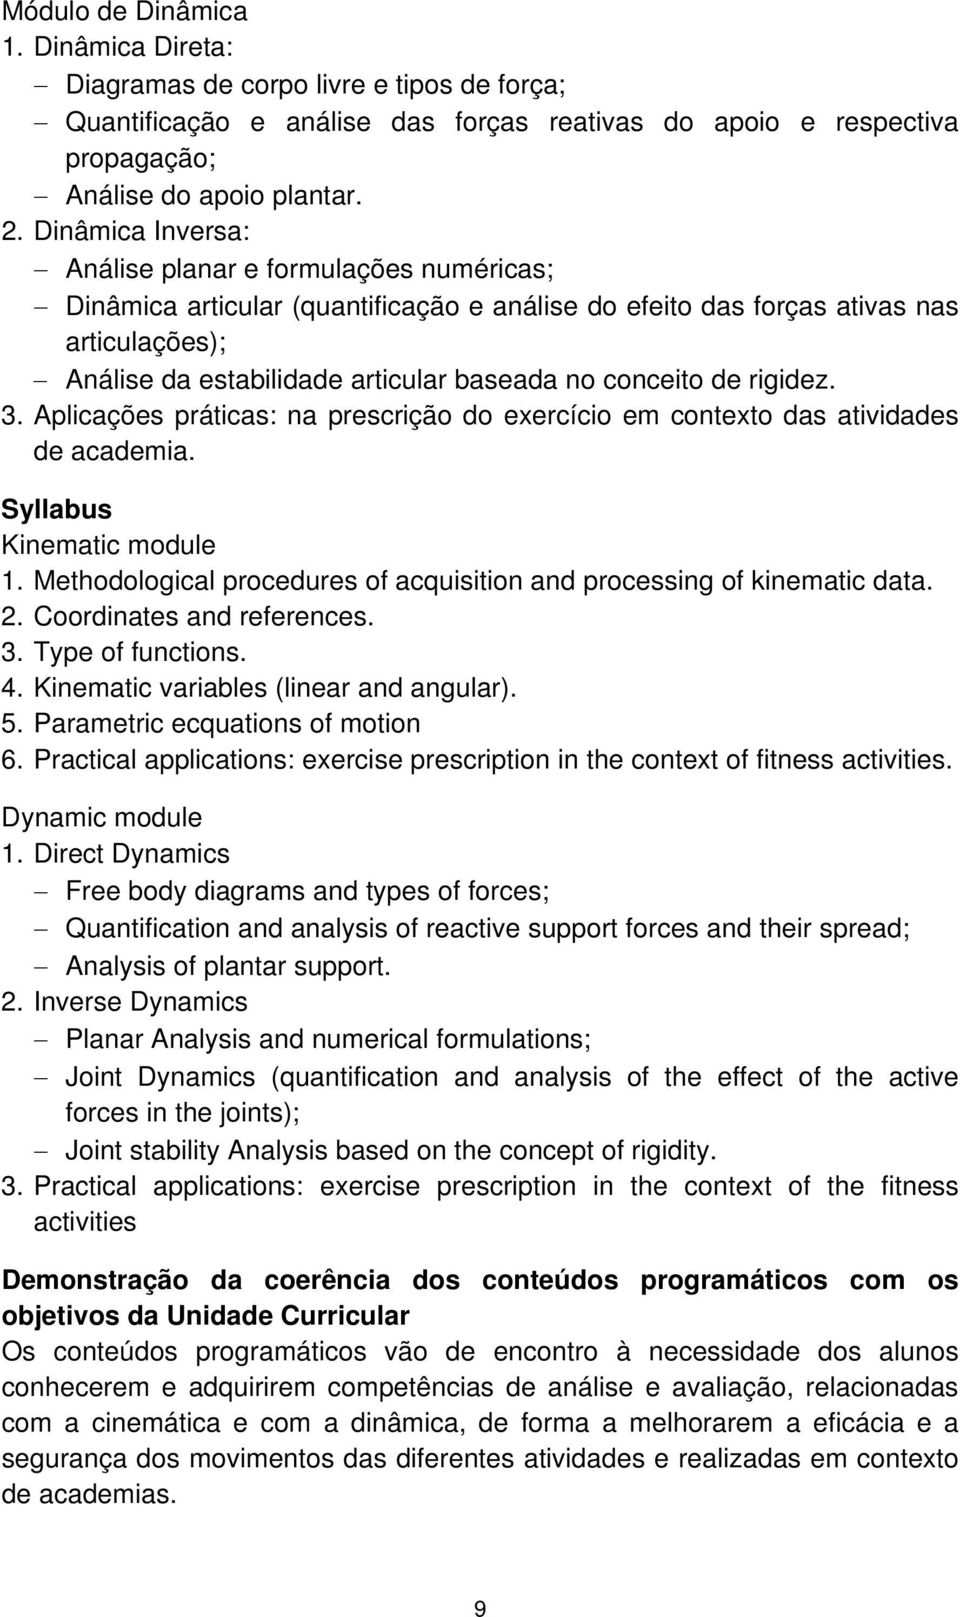 conceito de rigidez. 3. Aplicações práticas: na prescrição do exercício em contexto das atividades de academia. Syllabus Kinematic module 1.